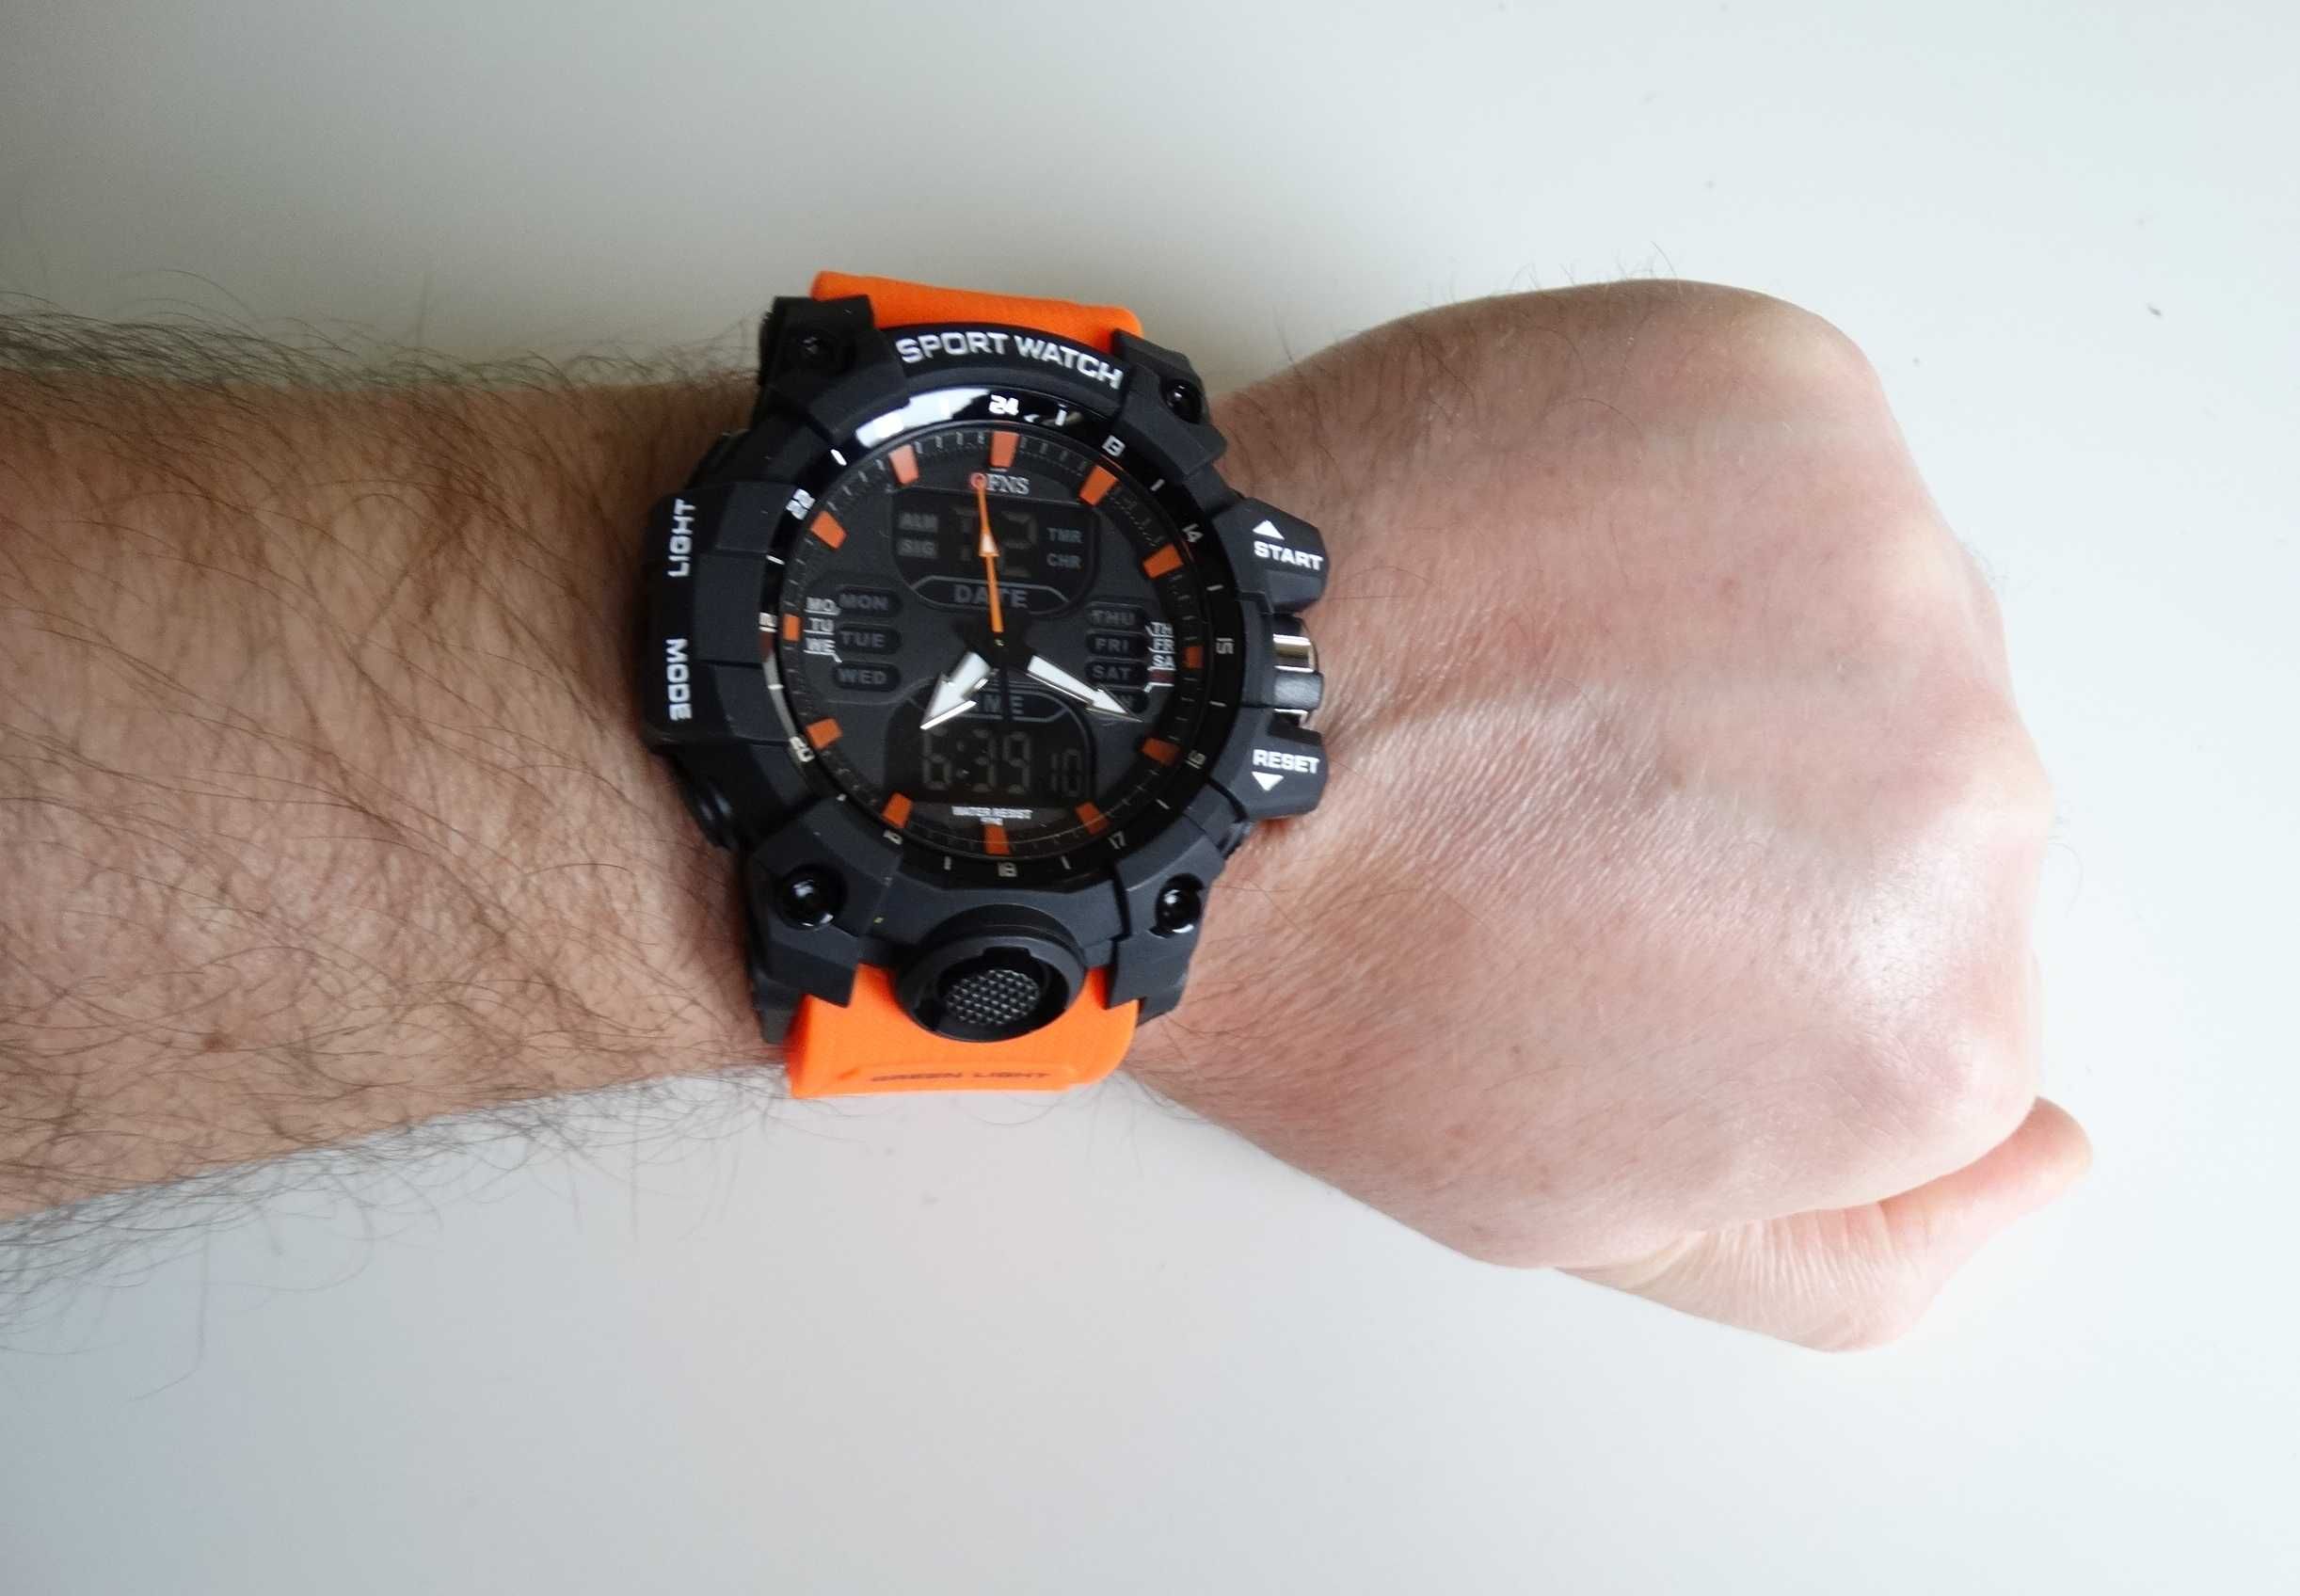 Wojskowy zegarek męski cyfrowy pomarańczowy LED OFNS WR50 sporotwy